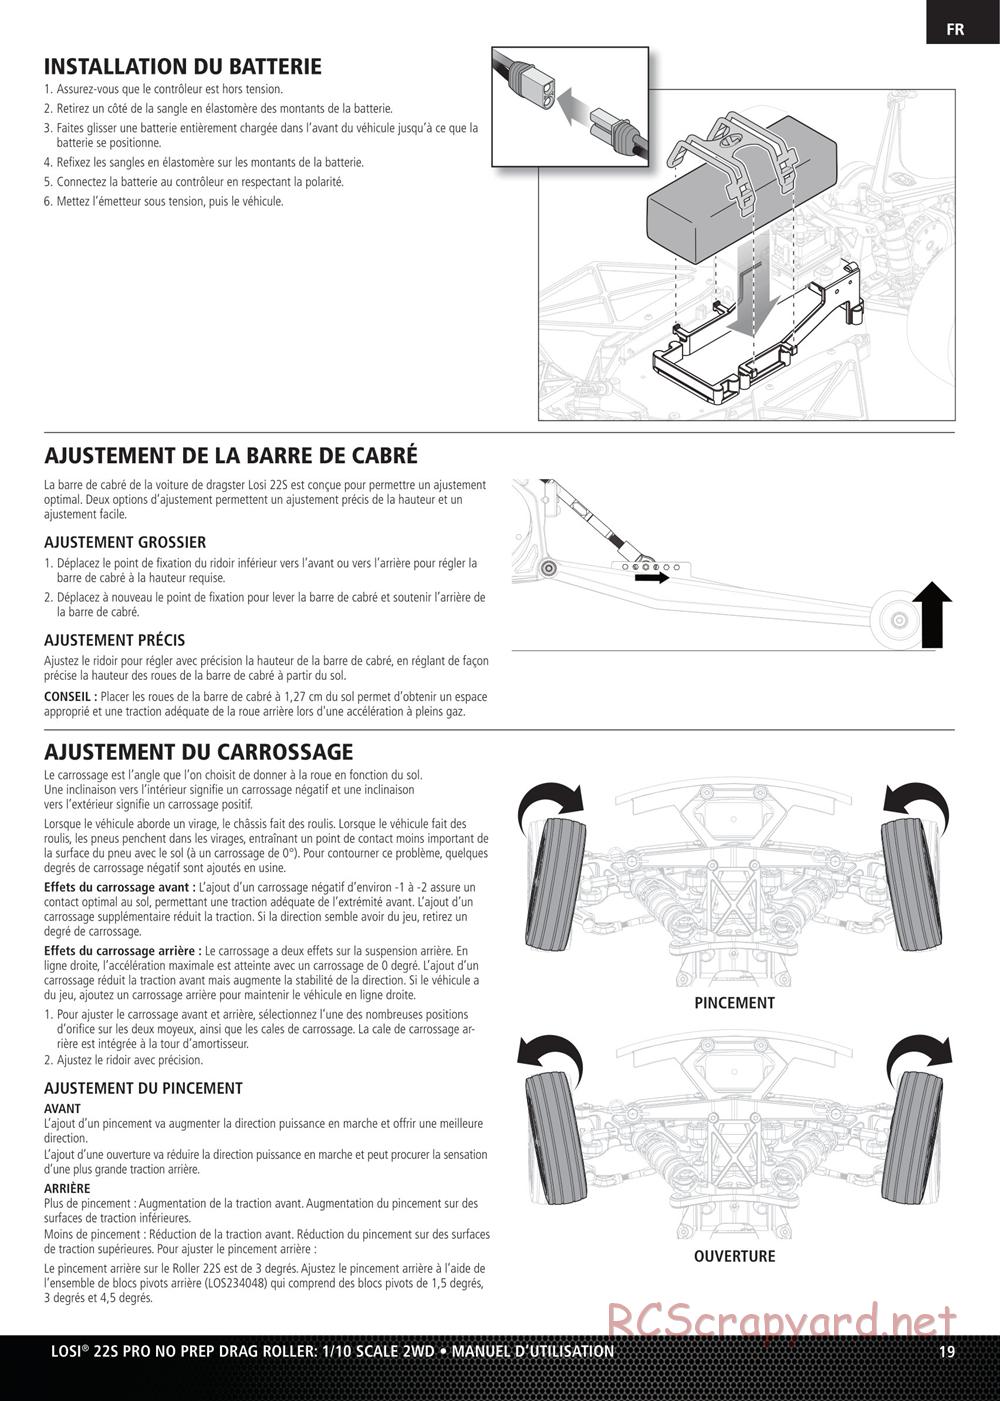 Team Losi - No Prep Drag Roller - Manual - Page 19